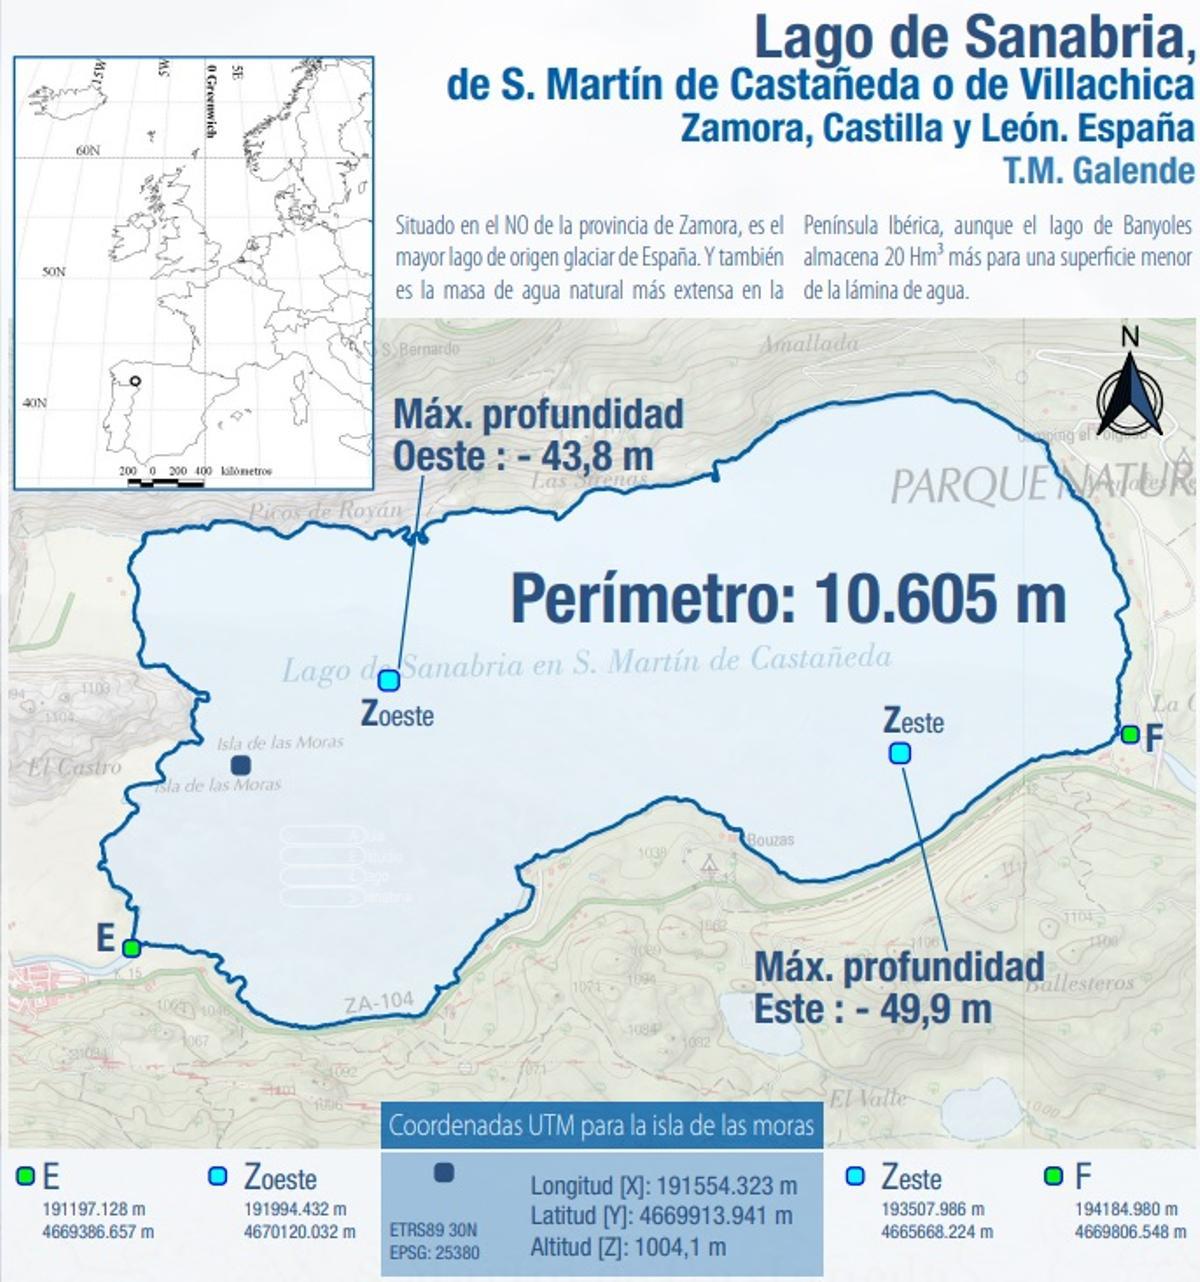 Datos sobre el Lago de Sanabria.